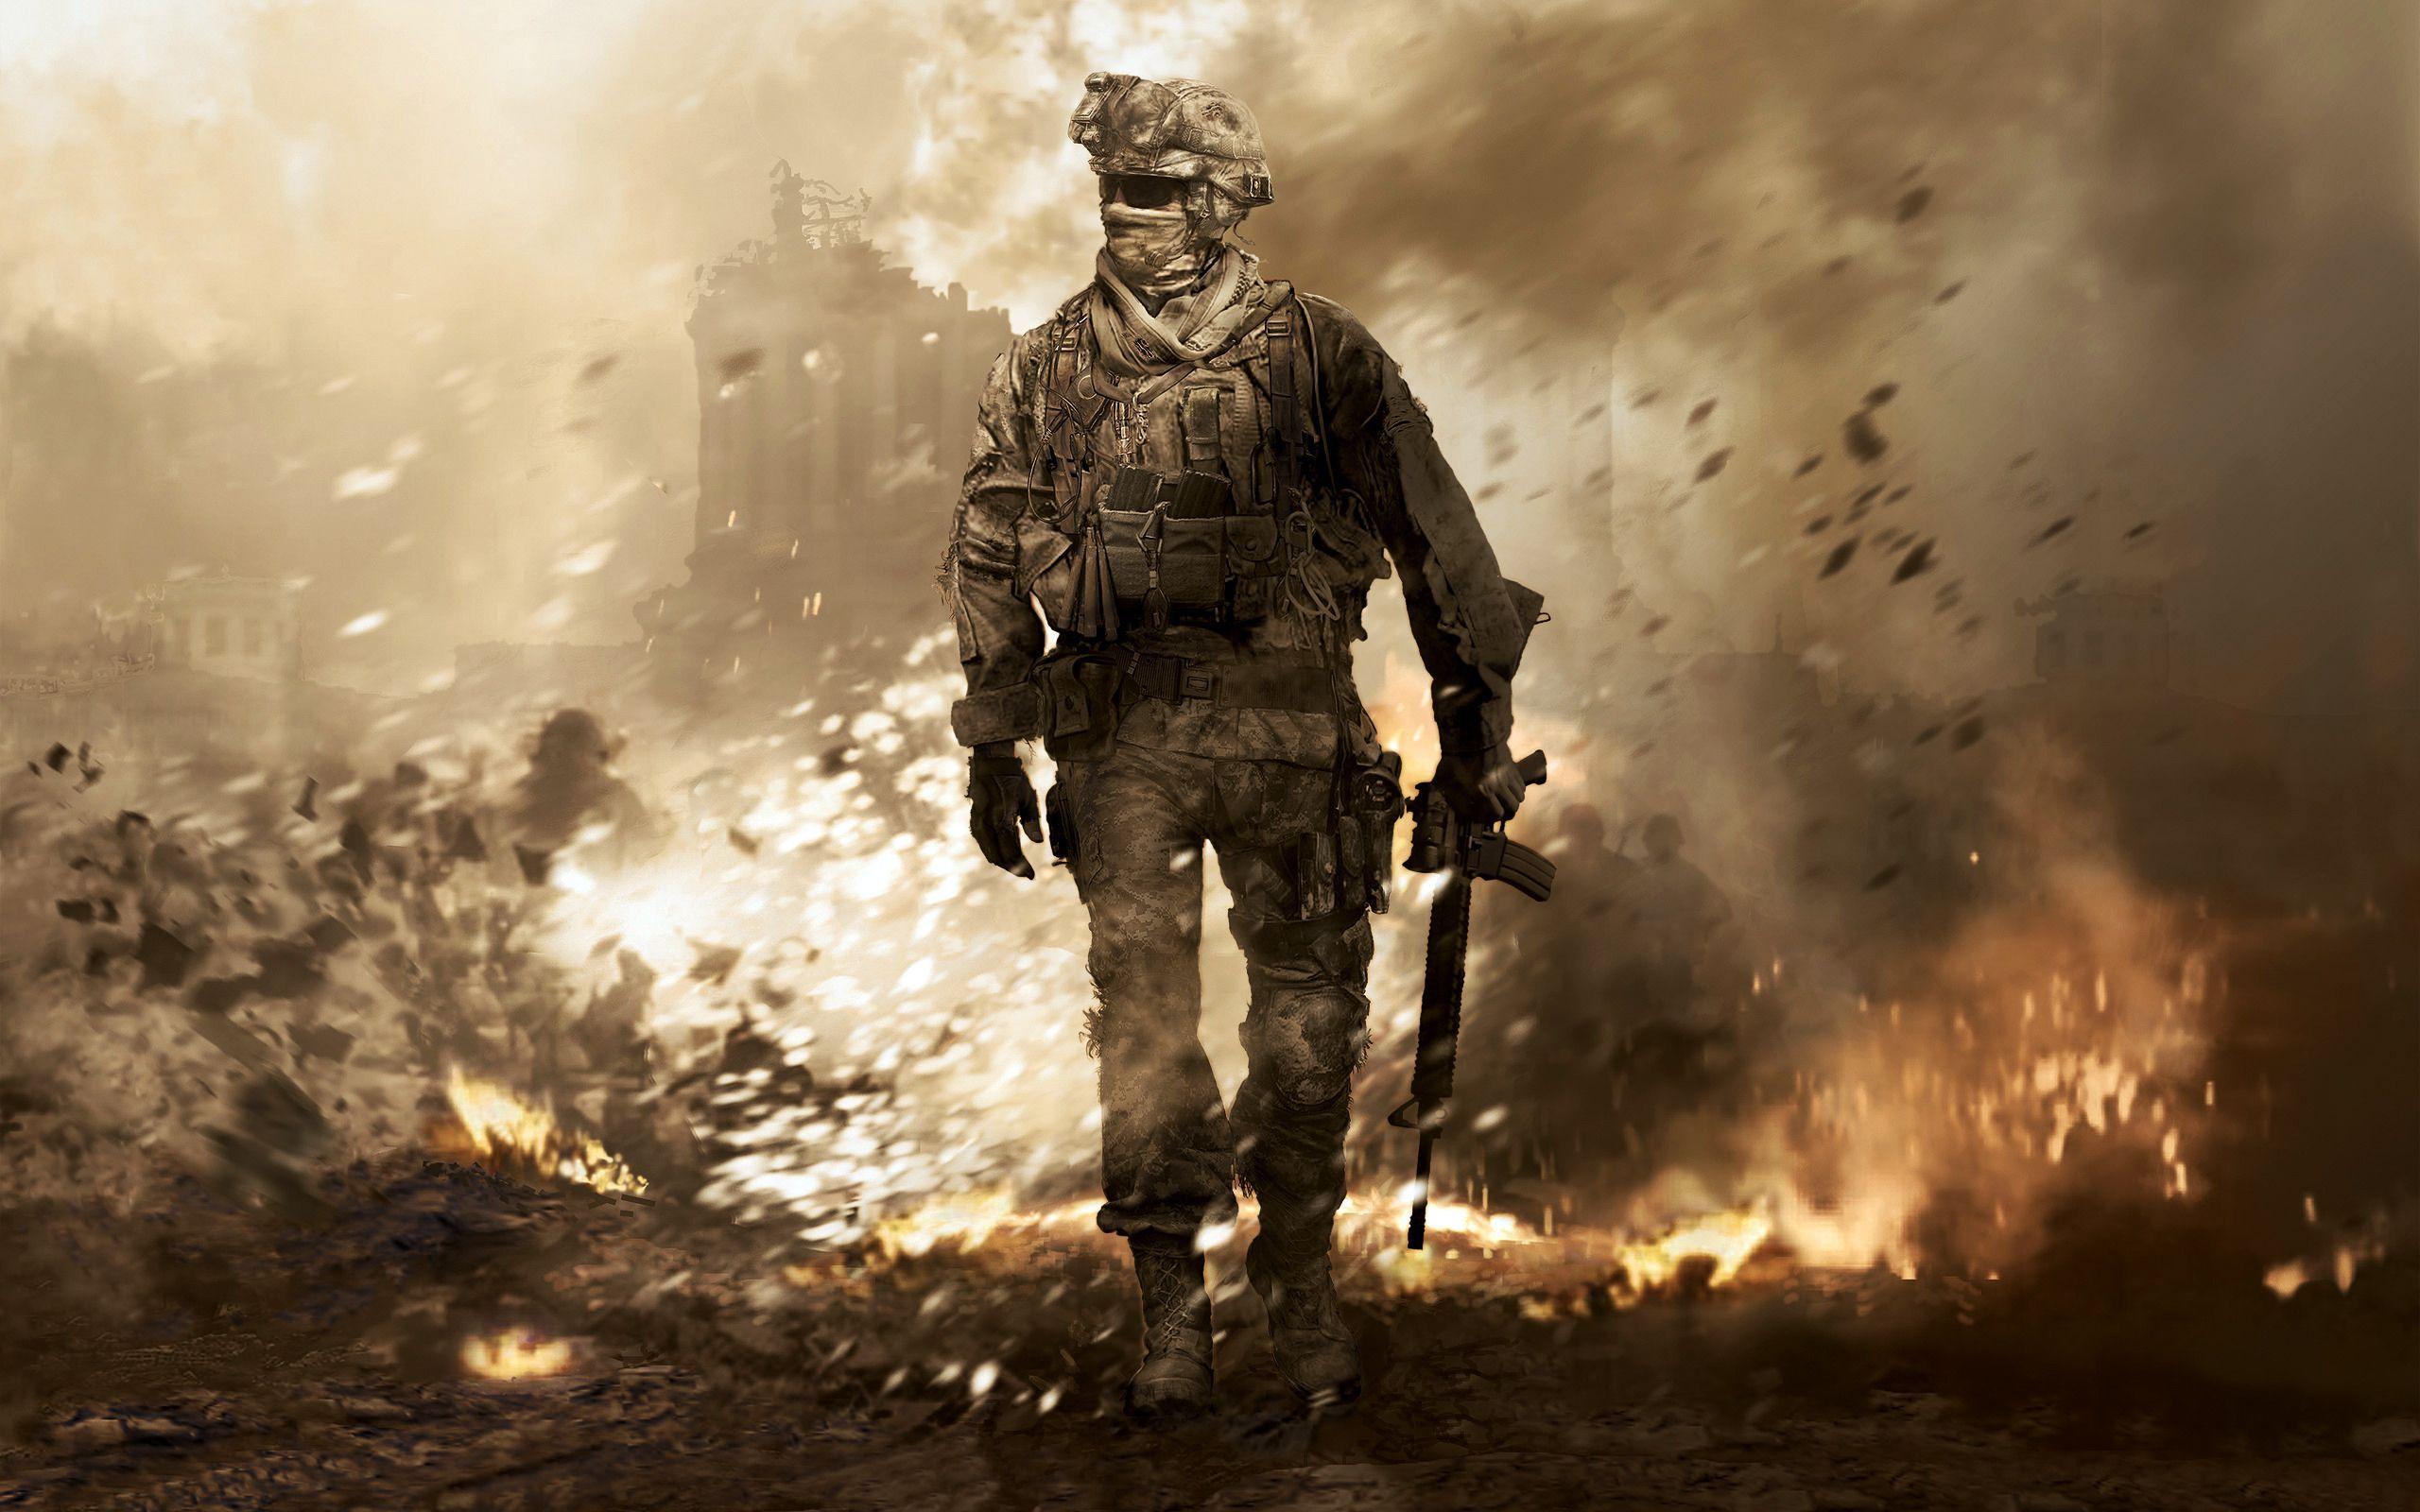 Call Of Duty 4 Modern Warfare Game Wallpaper 2560x1600 1517. Imágenes militares, Cancion de hielo y fuego, Videojuegos